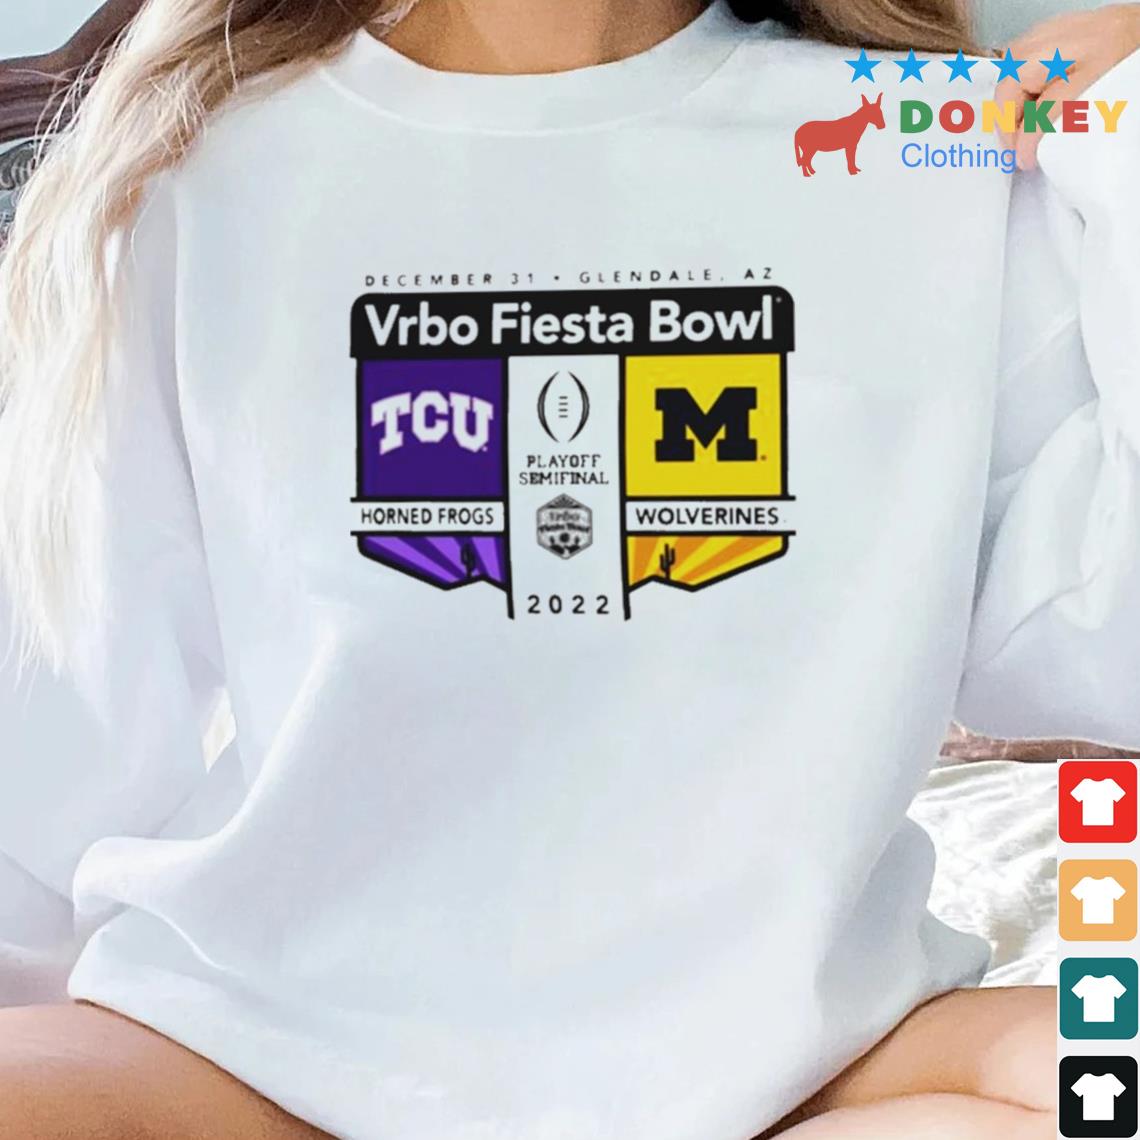 Awesome 2022 CFP Semifinal Vrbo Fiesta Bowl Tcu vs Michigan Logo Matchup Shirt